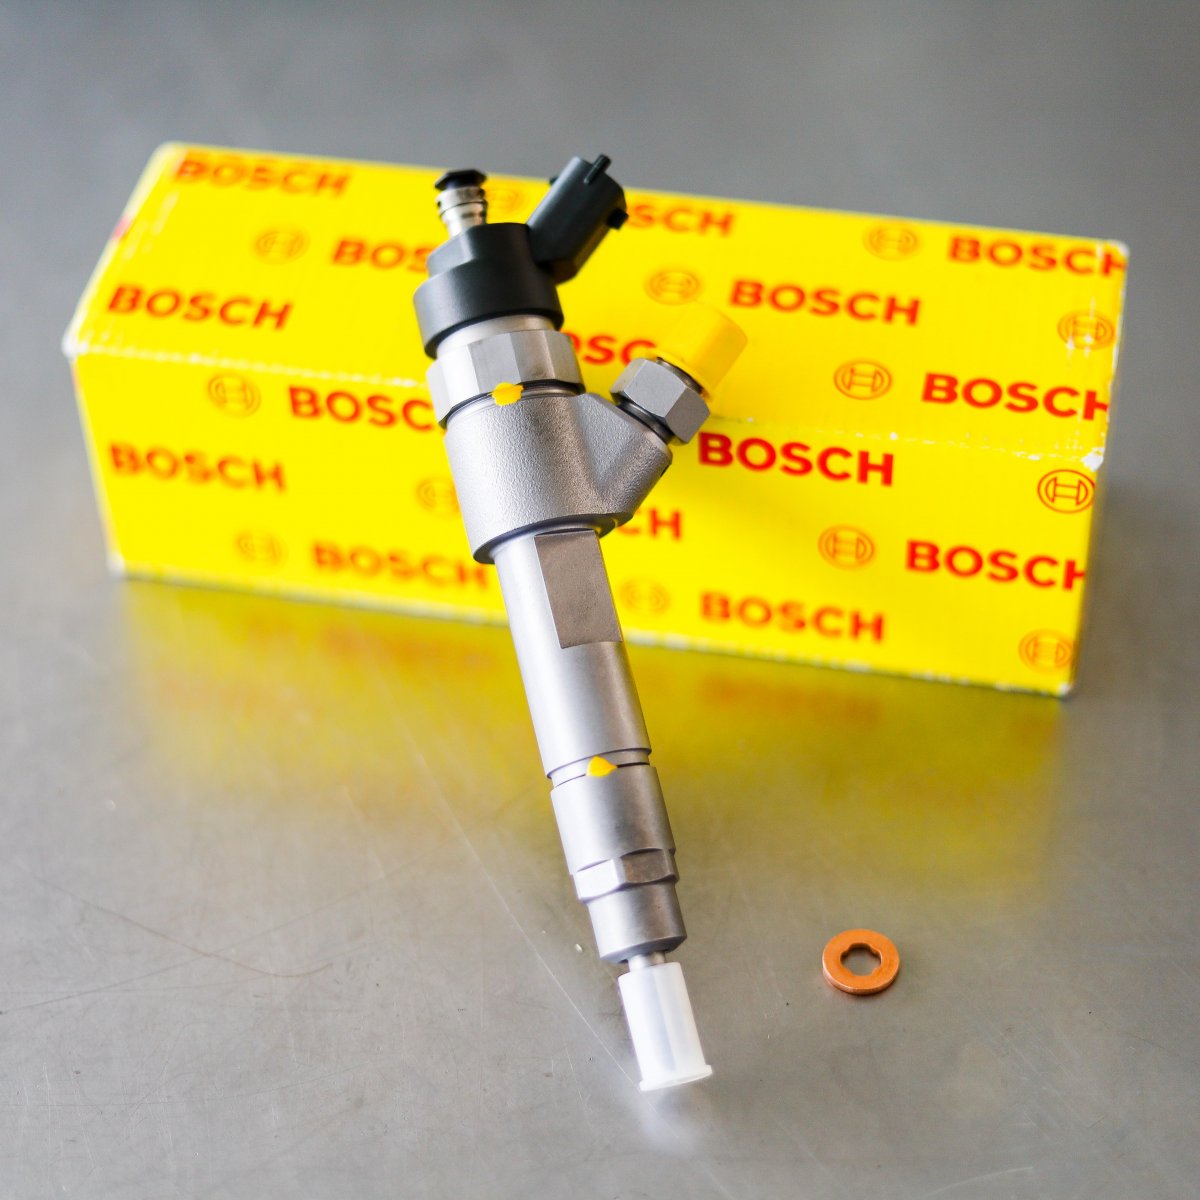 Wtryskiwacz Bosch po naprawie gotowy do nadania do Klienta na gwarancji na okres 2 lat w dobrej cenie